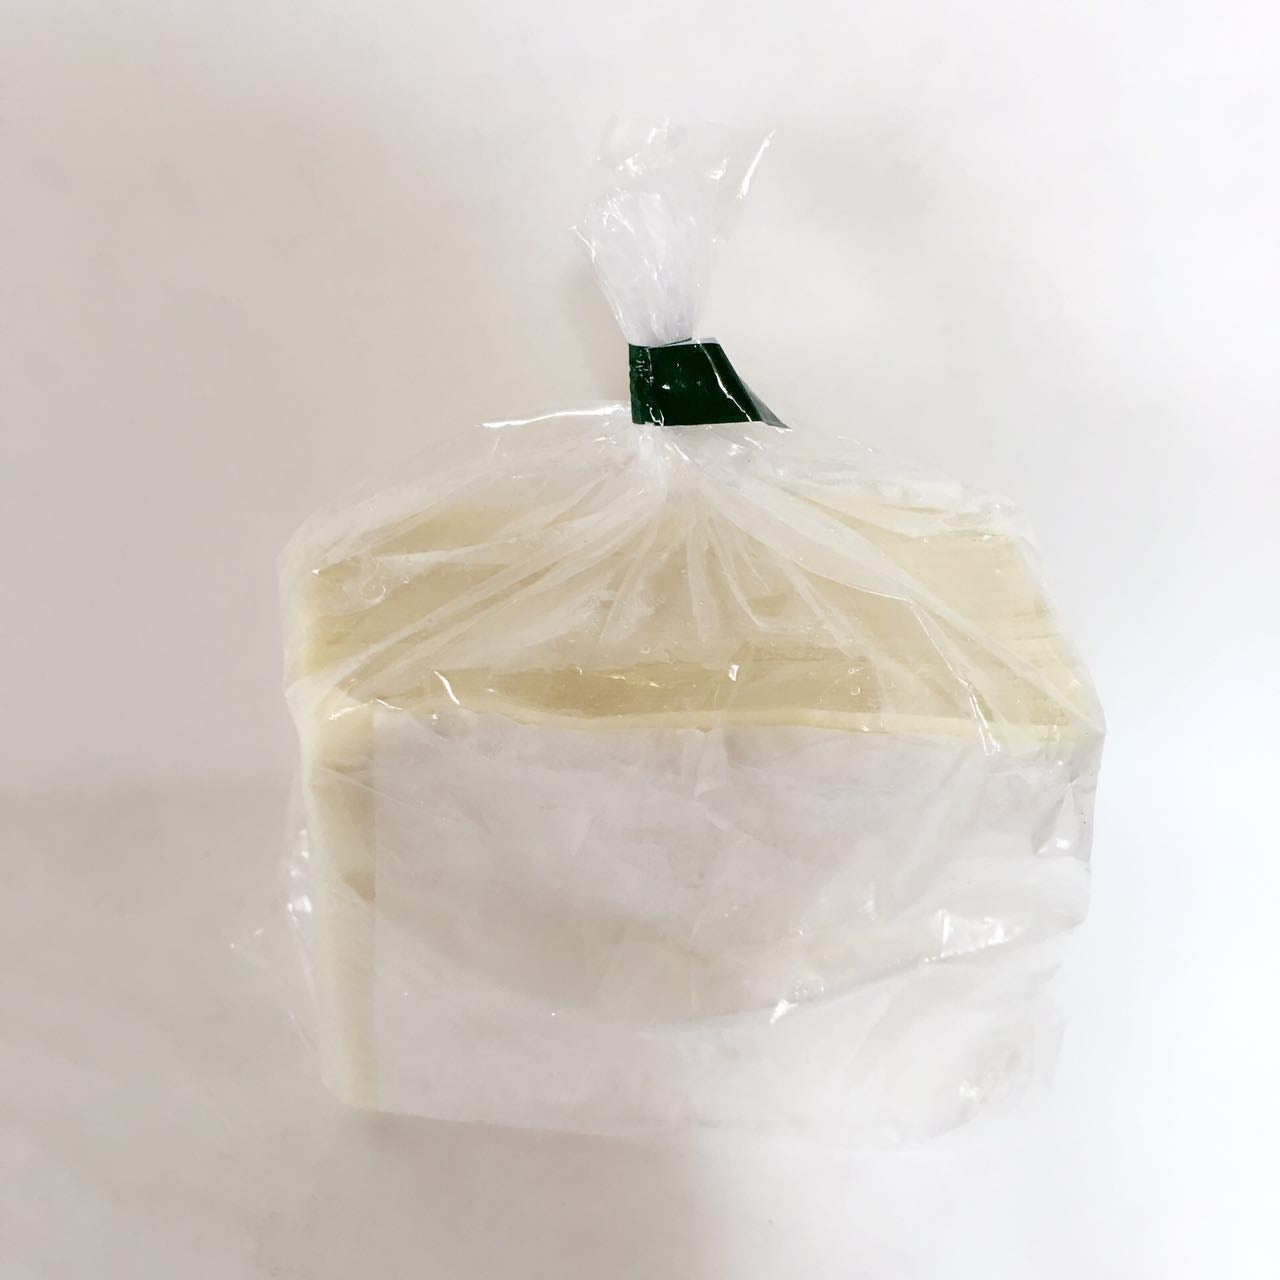 大雲呑皮 (約35枚）500g*5袋 日本国内加工 八幡製麺所 冷凍品